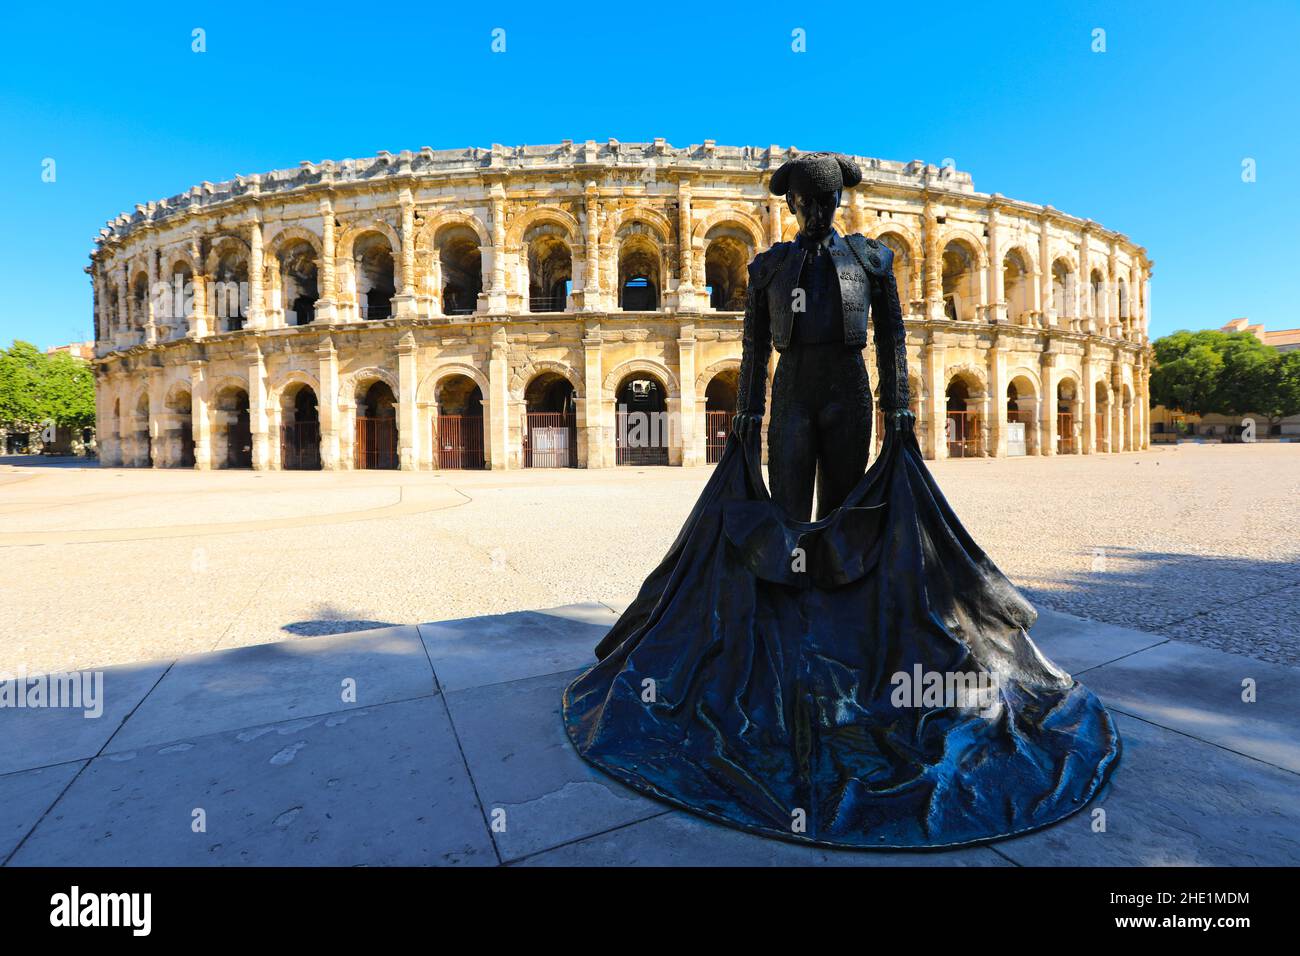 Nimes, Frankreich - 19. Juli 2020: Römisches Amphitheater in Nimes, Provence. Prächtige riesige Arena perfekt für zweitausend Jahre erhalten Stockfoto